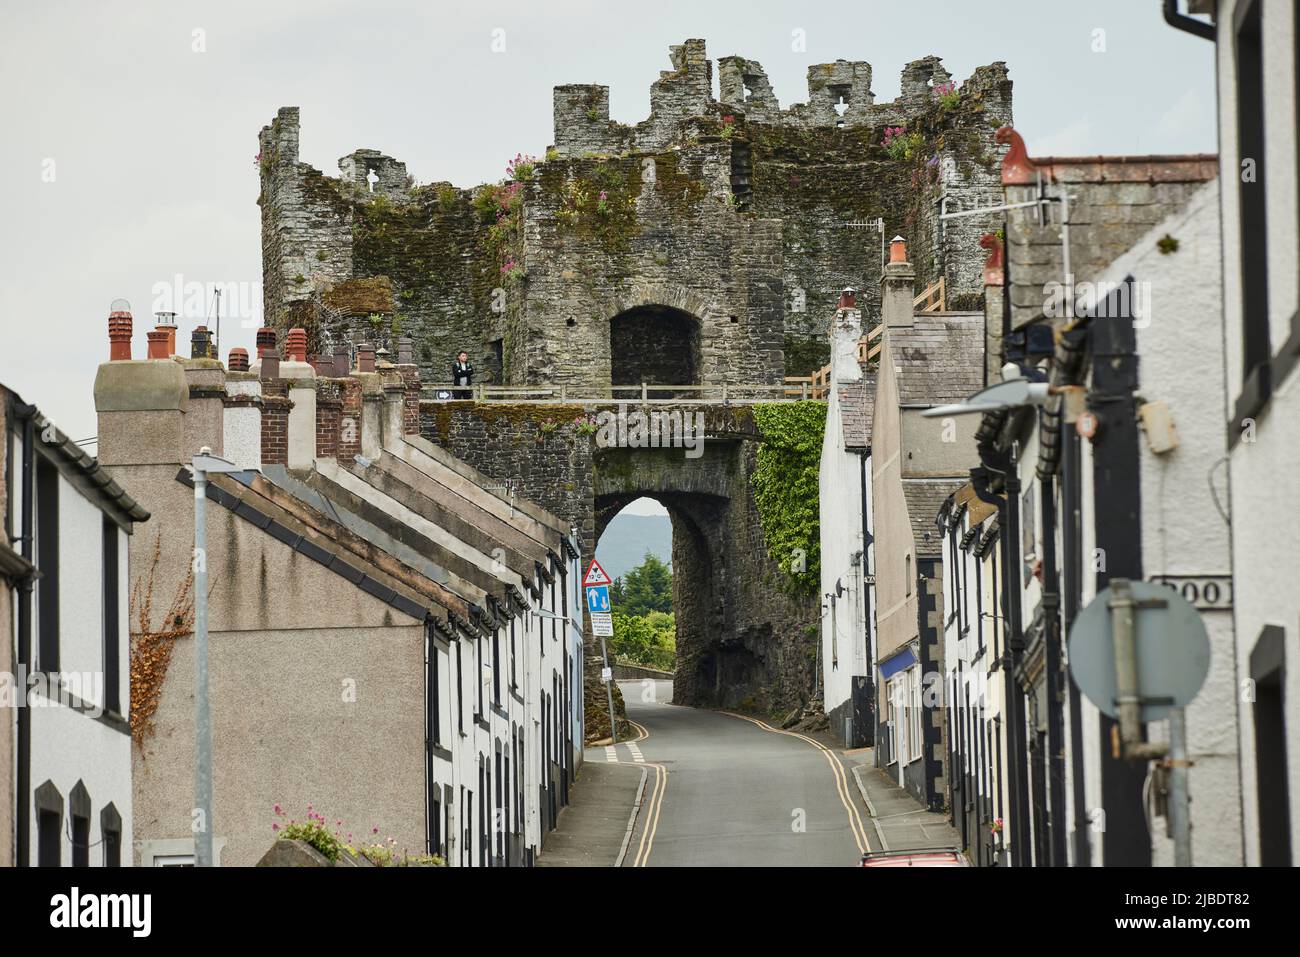 Conwy, au nord du pays de Galles les remparts de Conwy sont une structure défensive médiévale qui se trouve le long du château de Conwy Banque D'Images